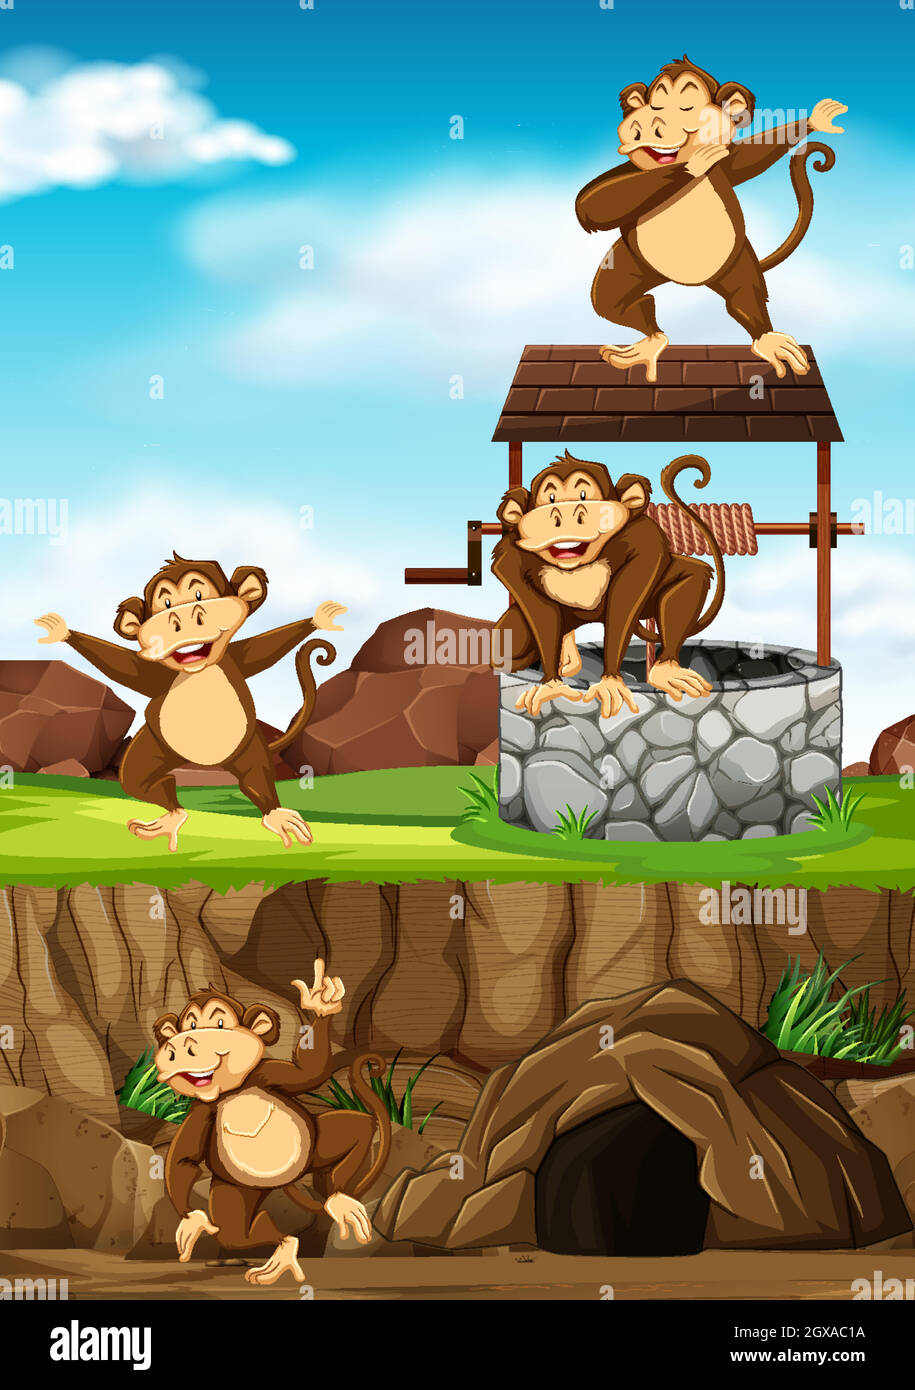 Les singes sauvages se regroupent dans de nombreuses poses dans le style de dessin animé d'un parc animal sur fond de jour Illustration de Vecteur